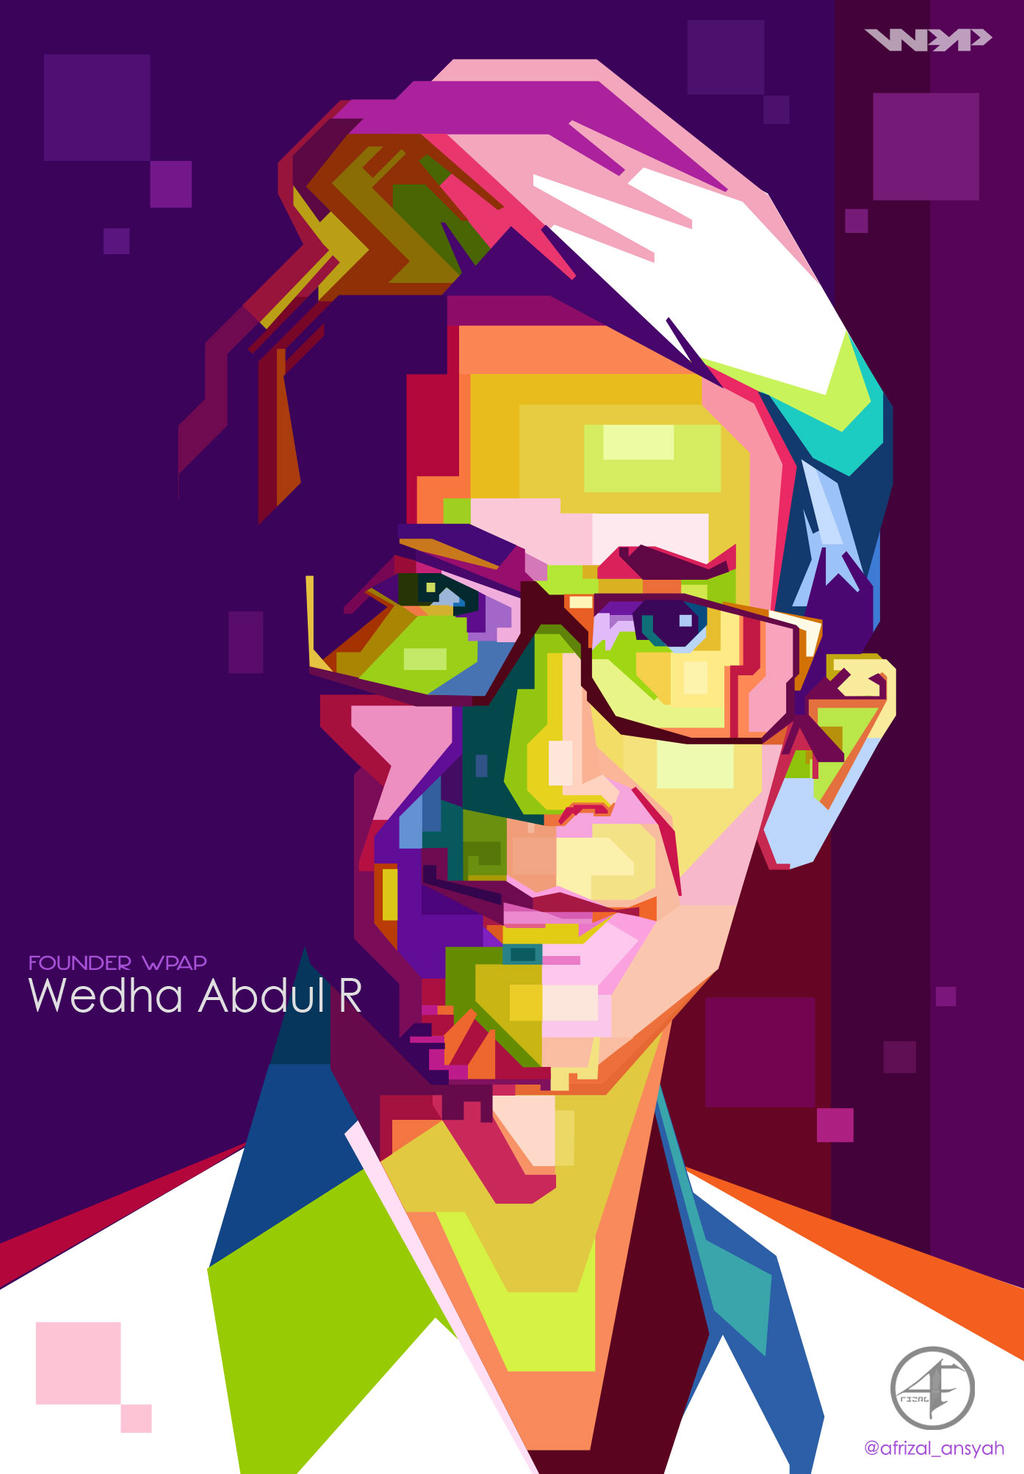 ... Wedha <b>Abdul Rasyid</b> Founder WPAP by Afrizal-ansyah - wedha_abdul_rasyid_founder_wpap_by_afrizal_ansyah-da1dayb